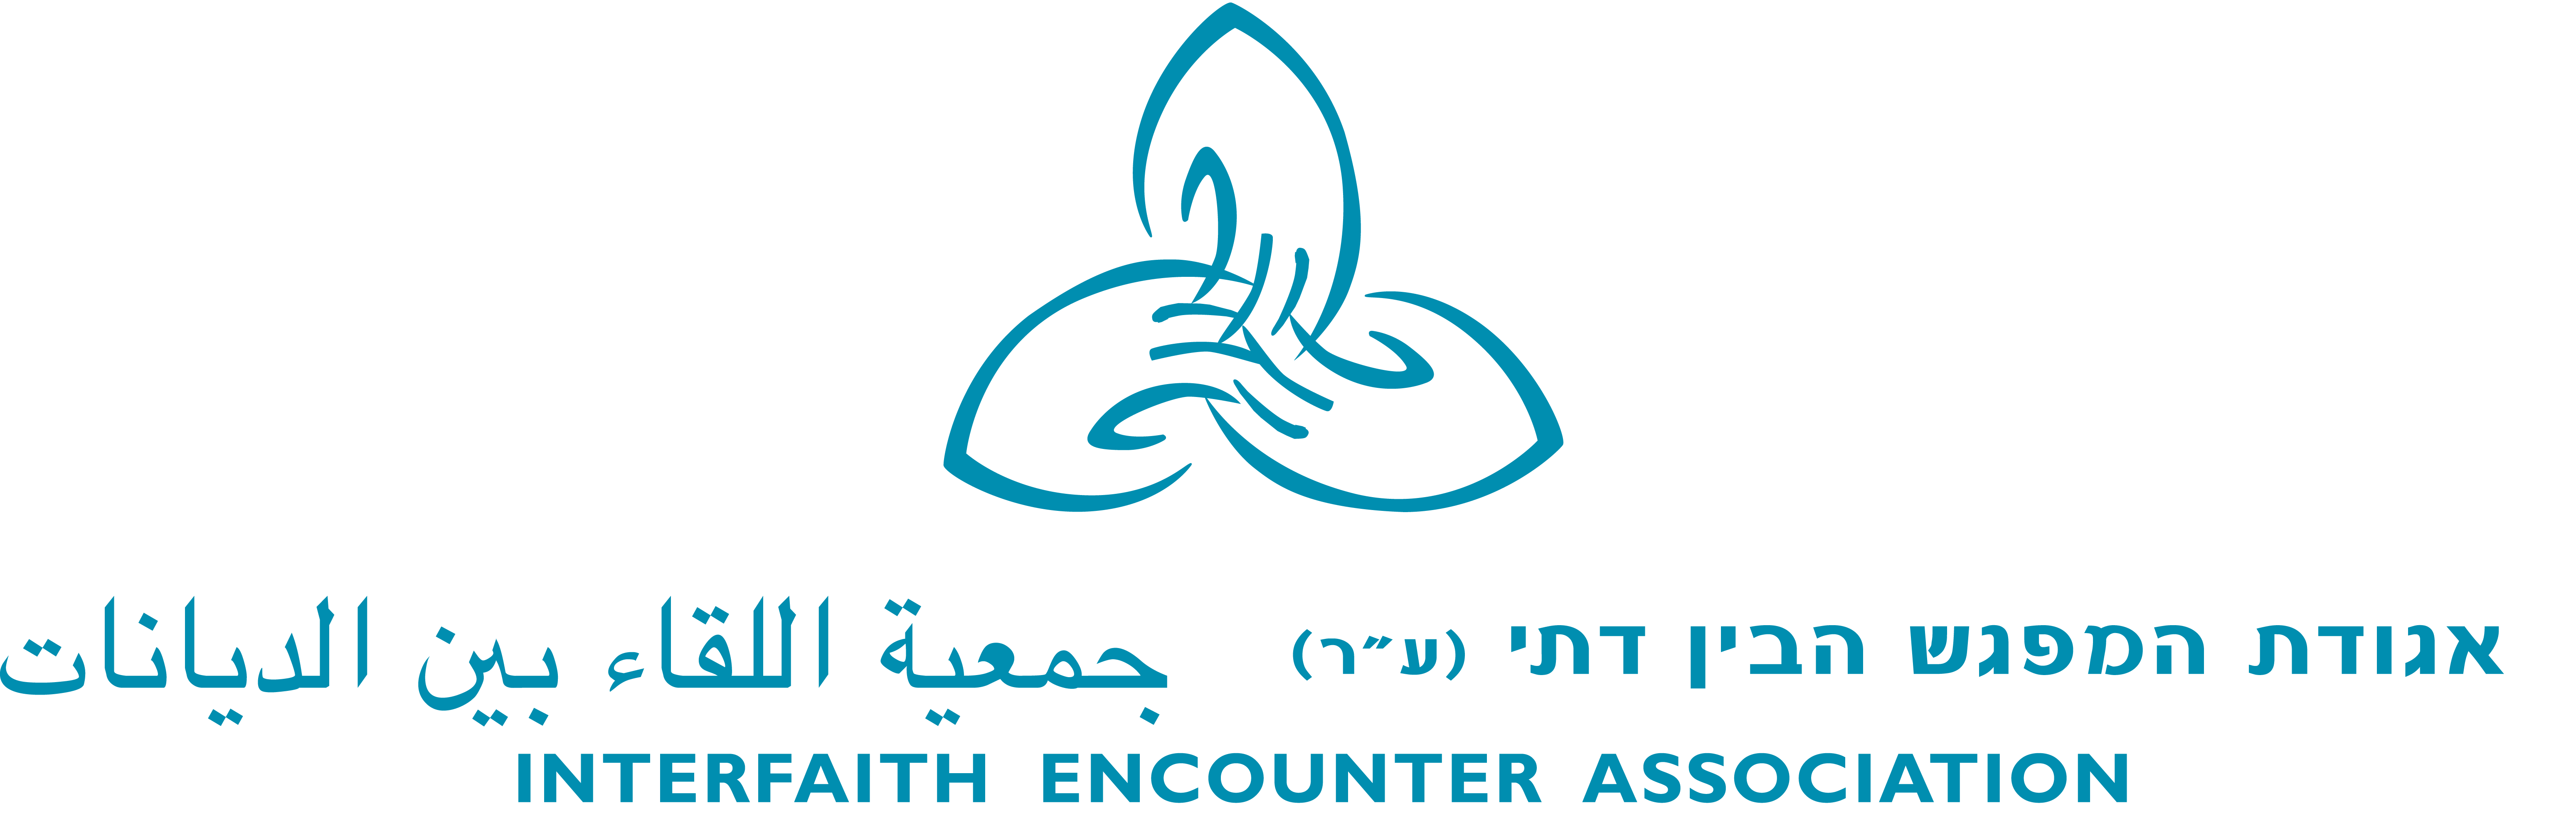 Encountered org. Bar ilan University logo. Interfaith Dialogue.